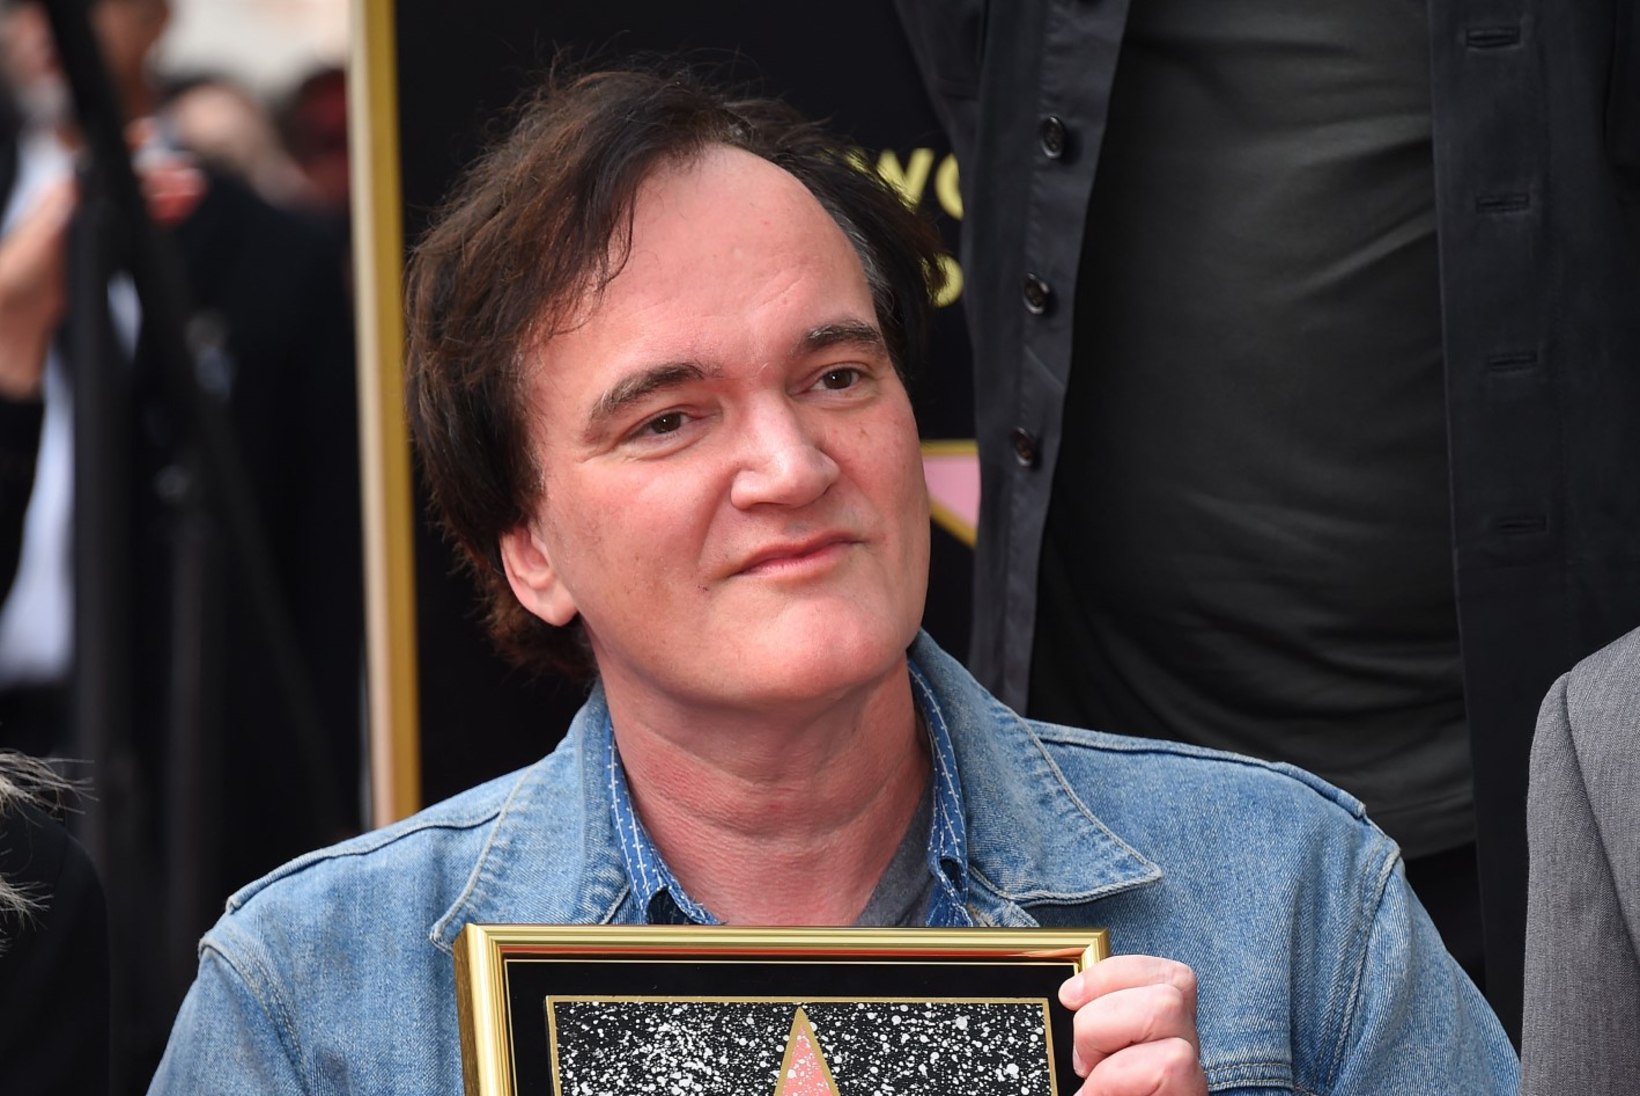 FOTOD | Quentin Tarantino sai tähe Hollywoodi kuulsuste alleel